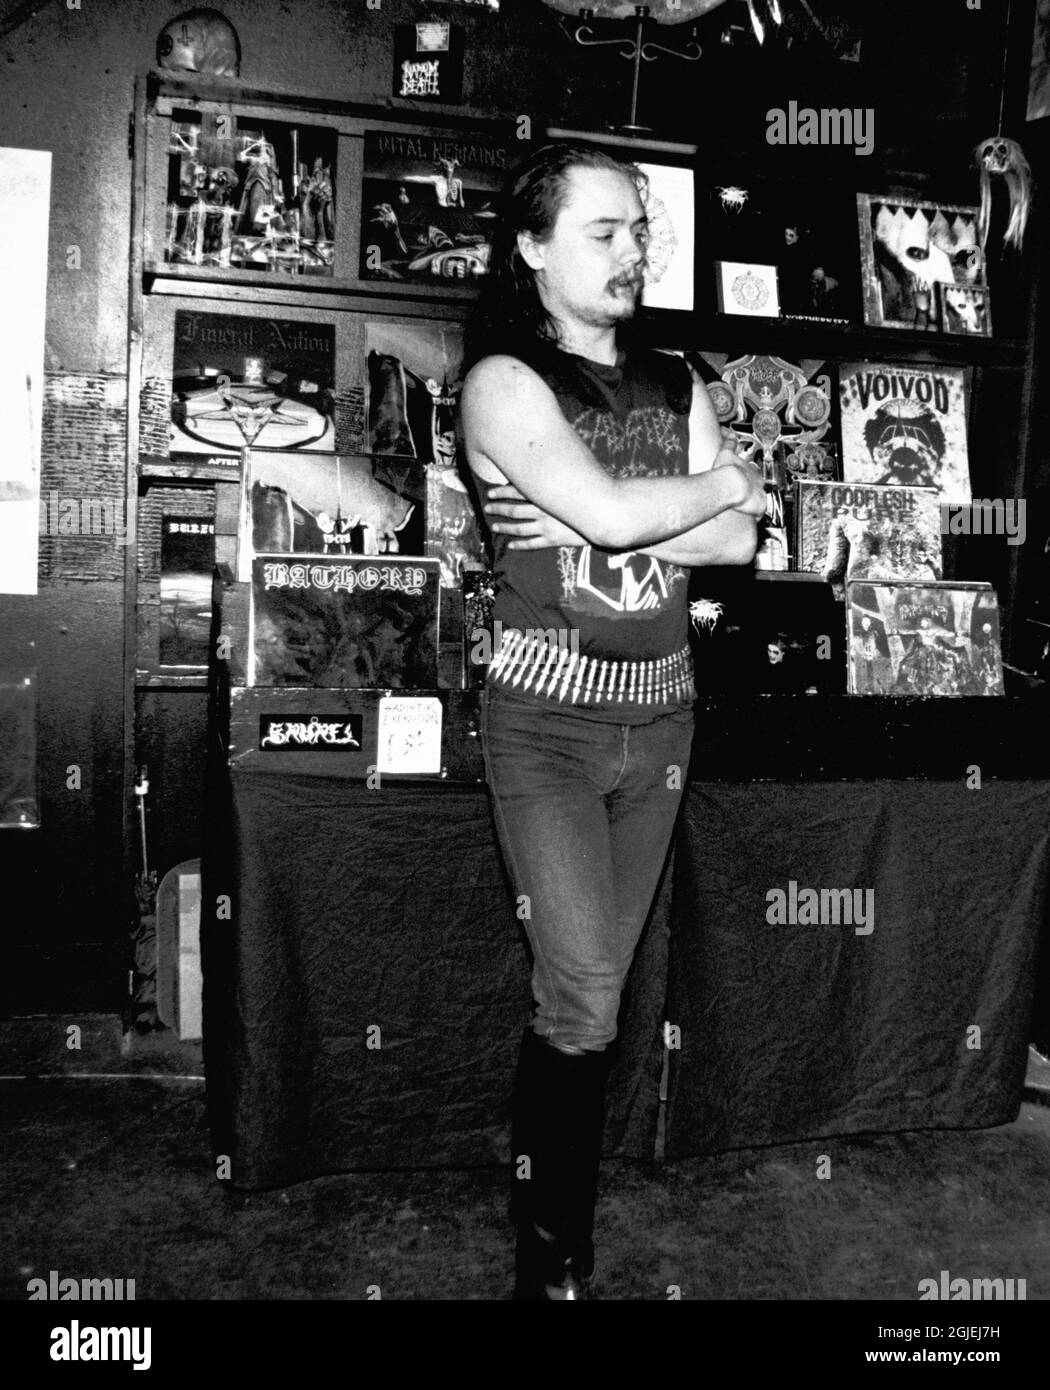 Gothic ROCKER Euronymous, noto anche come Oystein Aarseth della band metal Mayhem. Euronymous è stato brutalmente assassinato dal rivale satanista Death Metal ROCKER Vang Vikernes (non illustrato) nel 1993, che attualmente serve 21 anni di carcere per l'omicidio. La firebrigata al fuoco della Chiesa di Skjolds nei pressi di Haugesund, Norvegia di cui Vorg Vikernes è accusato. Foto Stock